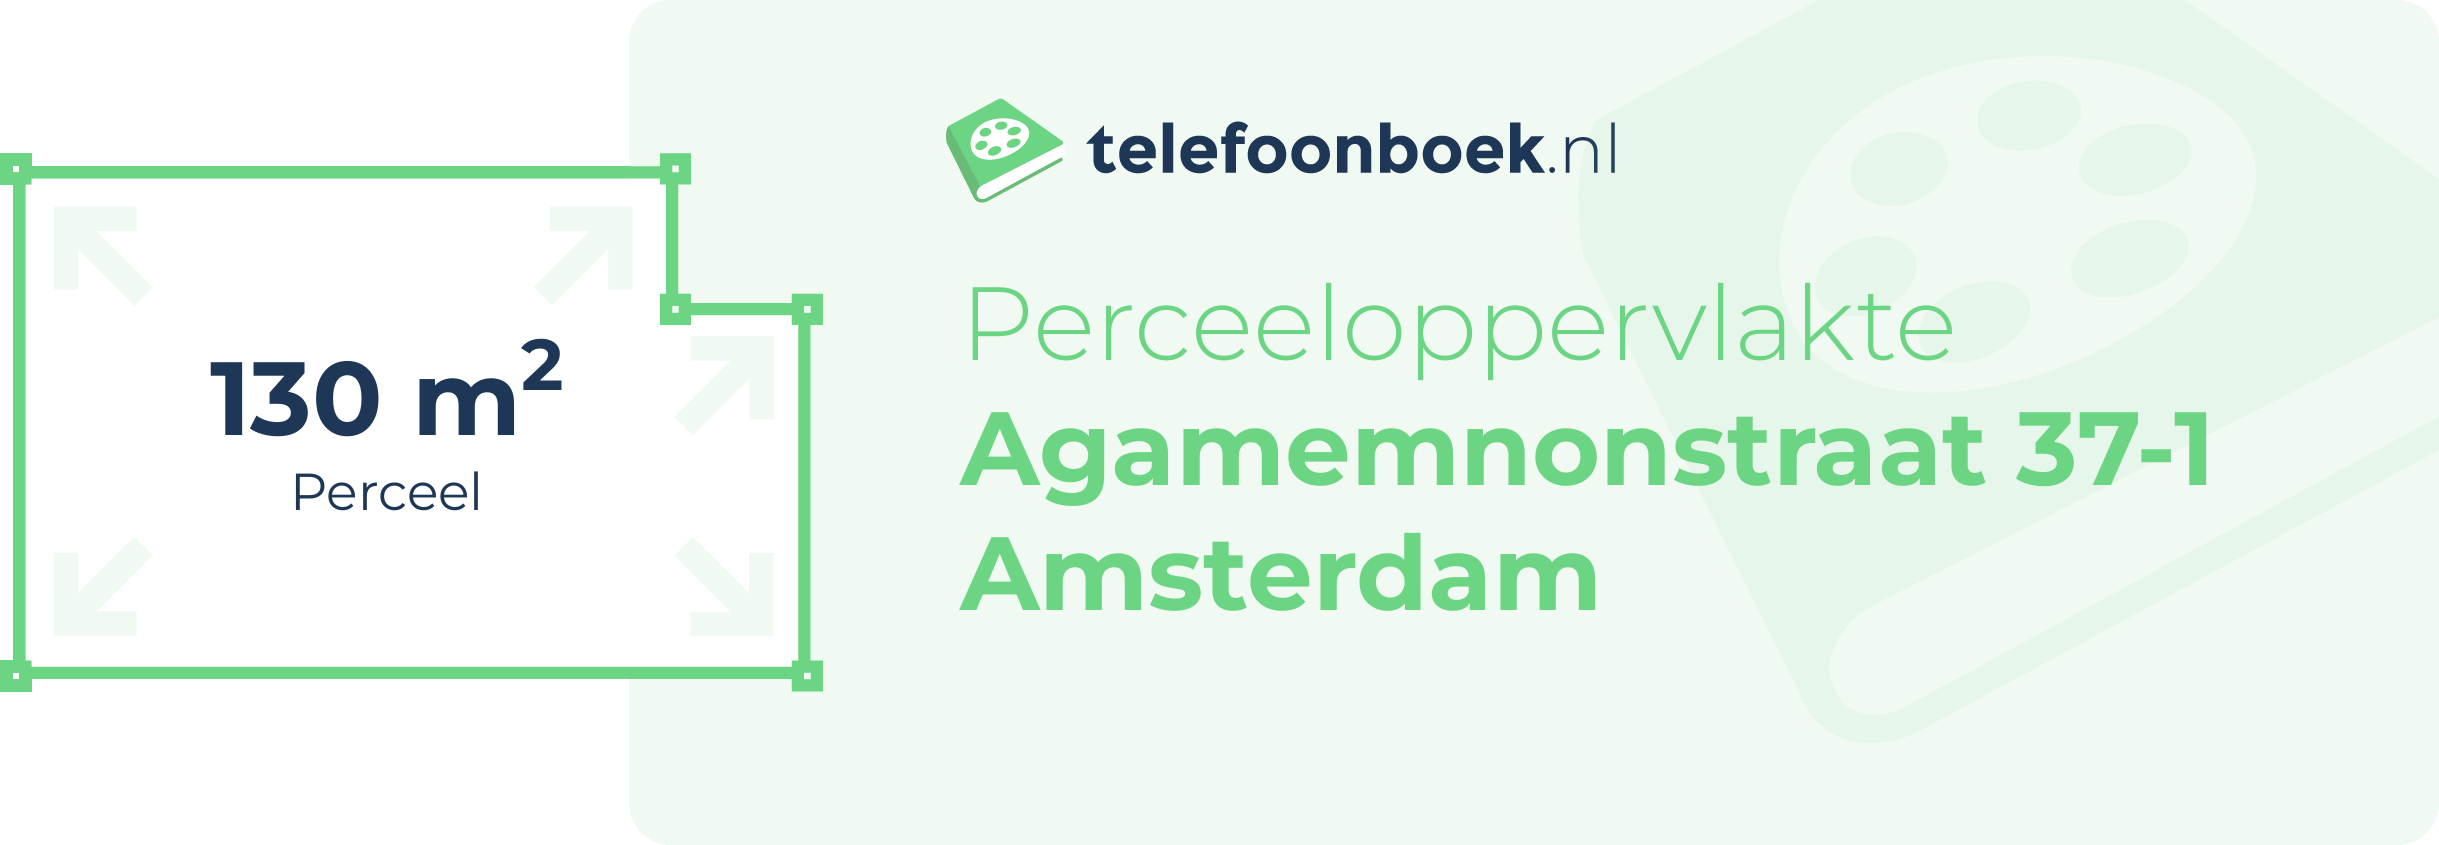 Perceeloppervlakte Agamemnonstraat 37-1 Amsterdam